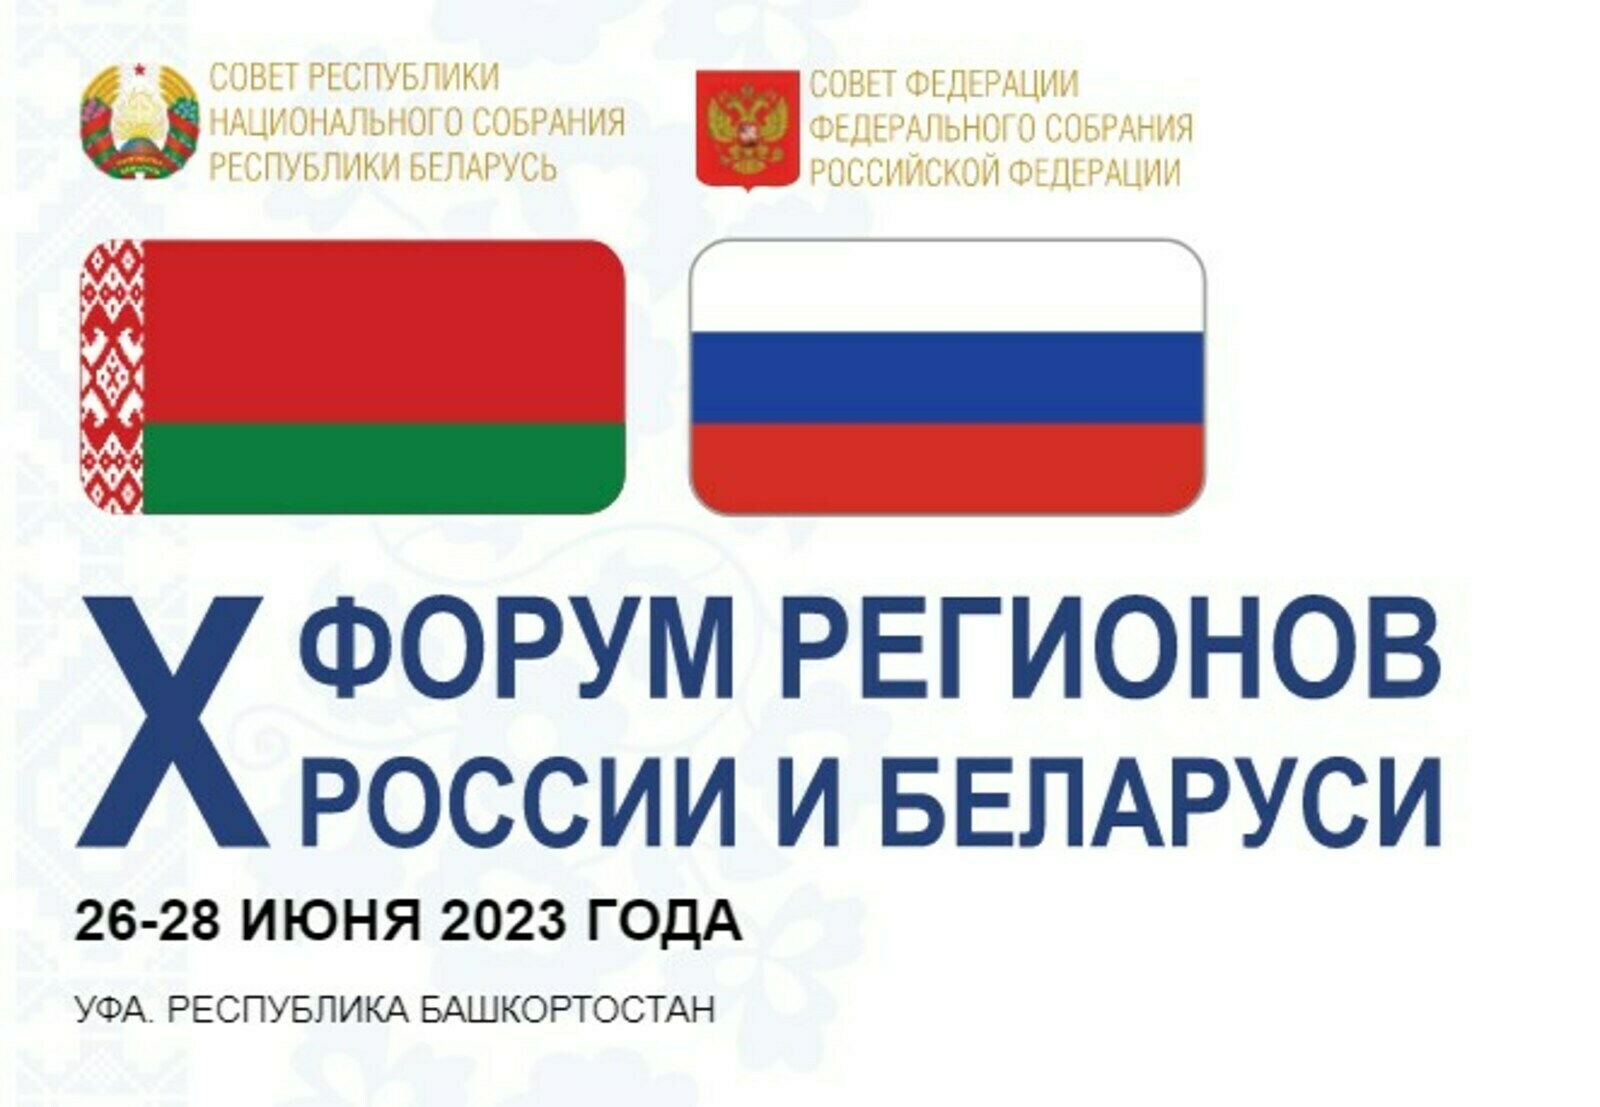 Взаимоотношения регионов России с Беларусью становятся более тесными